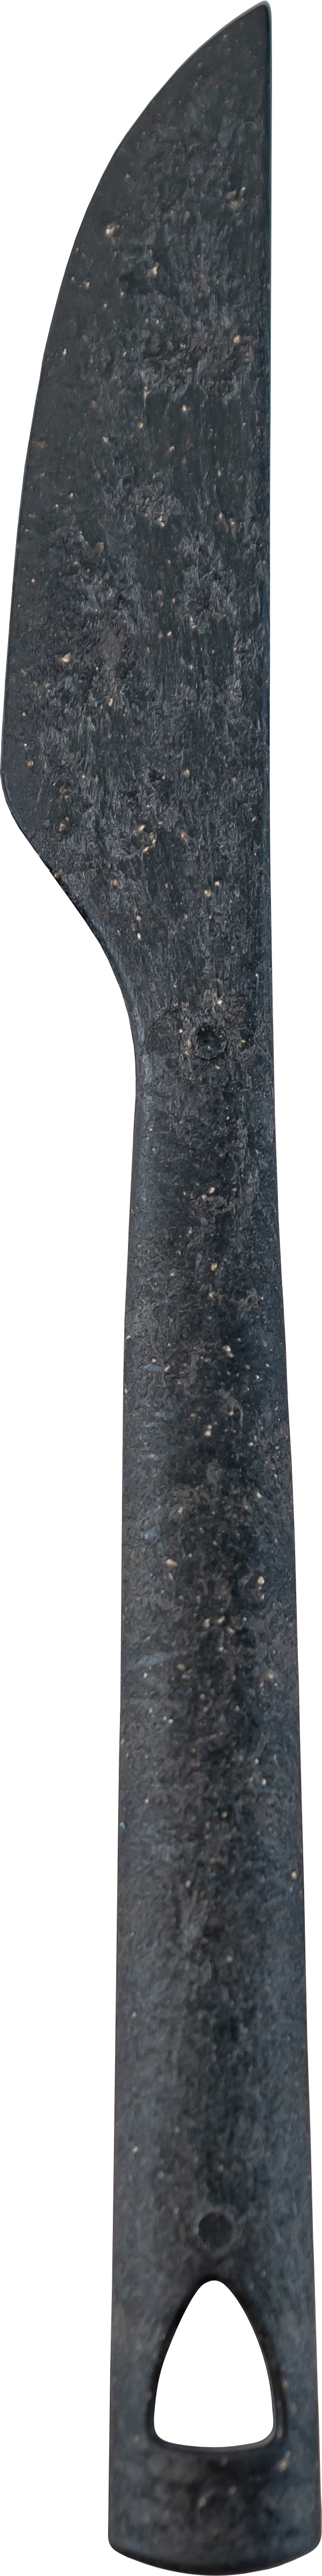 Kupilka kniv, sort, 20 cm